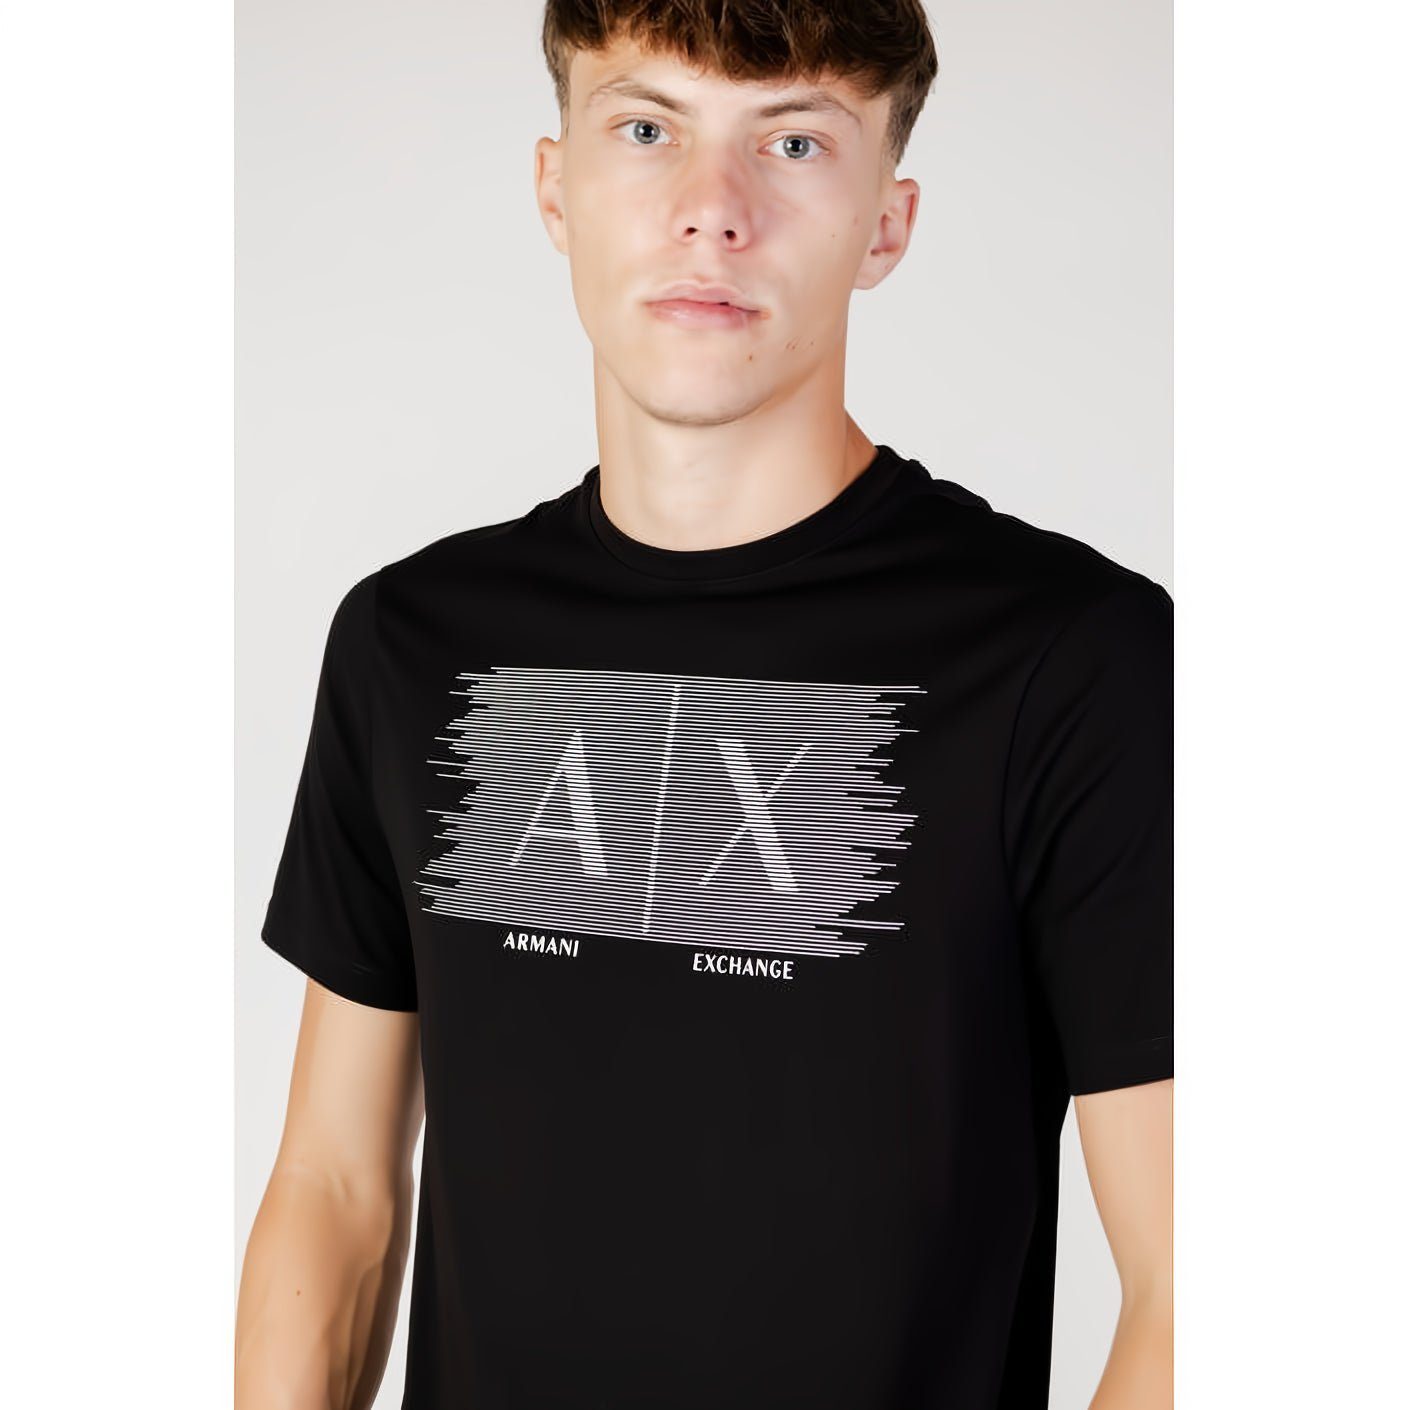 ARMANI EXCHANGE T-Shirt kurzarm, ein Ihre Rundhals, für Must-Have Kleidungskollektion